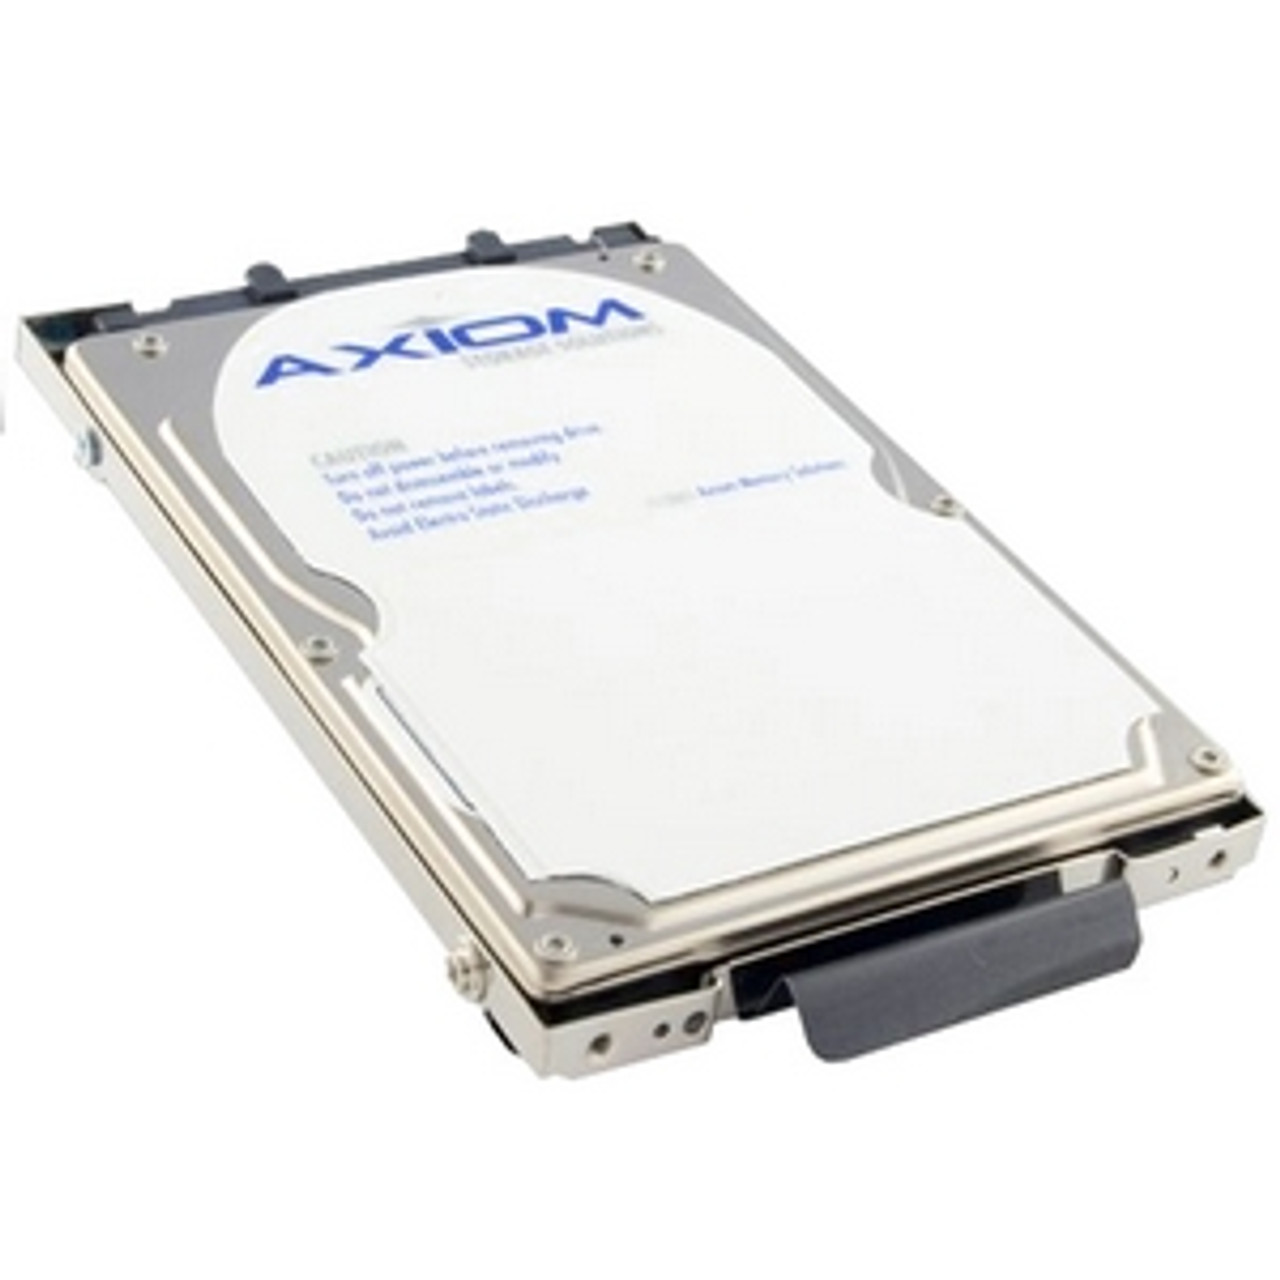 AXT-1320 - Axiom 20 GB Plug-in Module Hard Drive - IDE